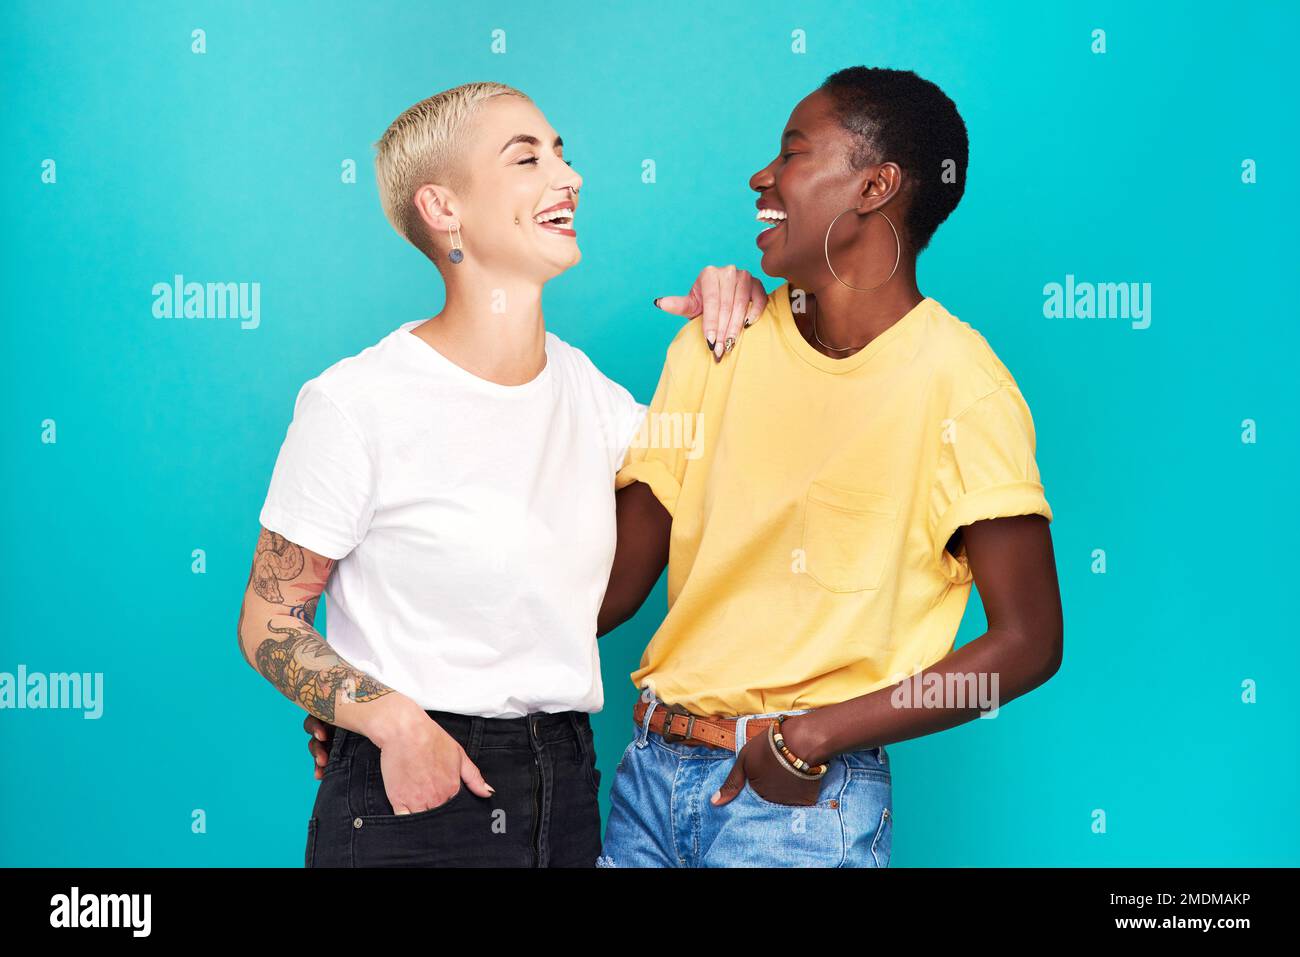 Es gibt keine bessere Bindung als diese beste Freundschaft. Studioaufnahme von zwei glücklichen jungen Frauen, die sich vor türkisfarbenem Hintergrund posieren. Stockfoto